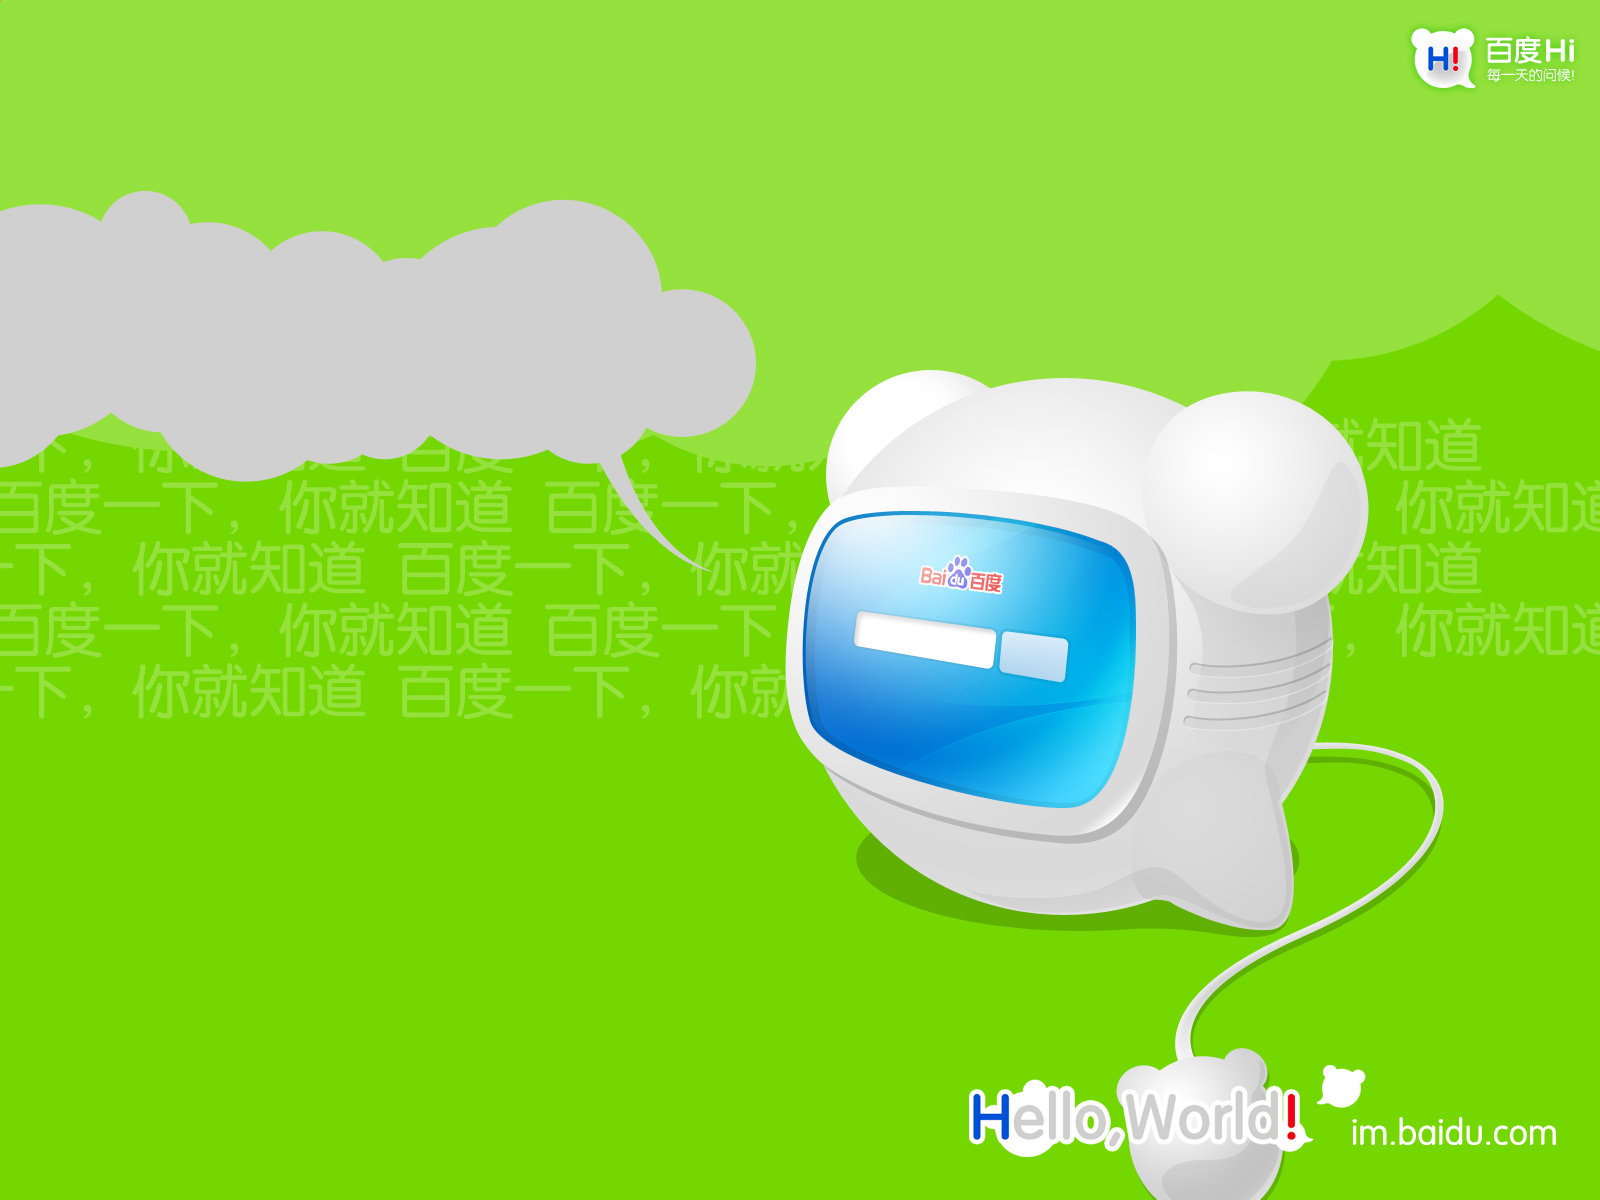 Melhores papéis de parede de Baidu_Oi para tela do telefone